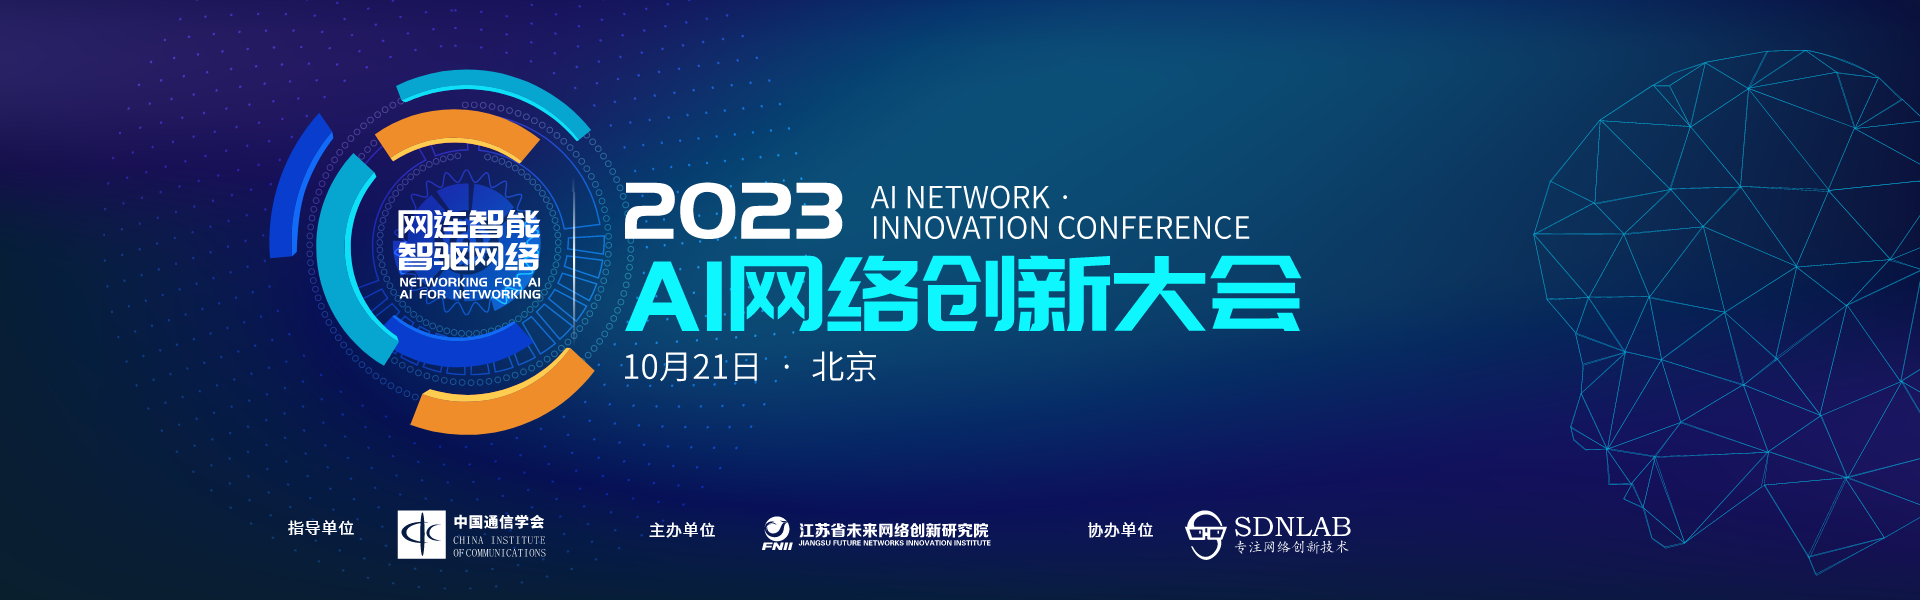 2023AI网络创新大会